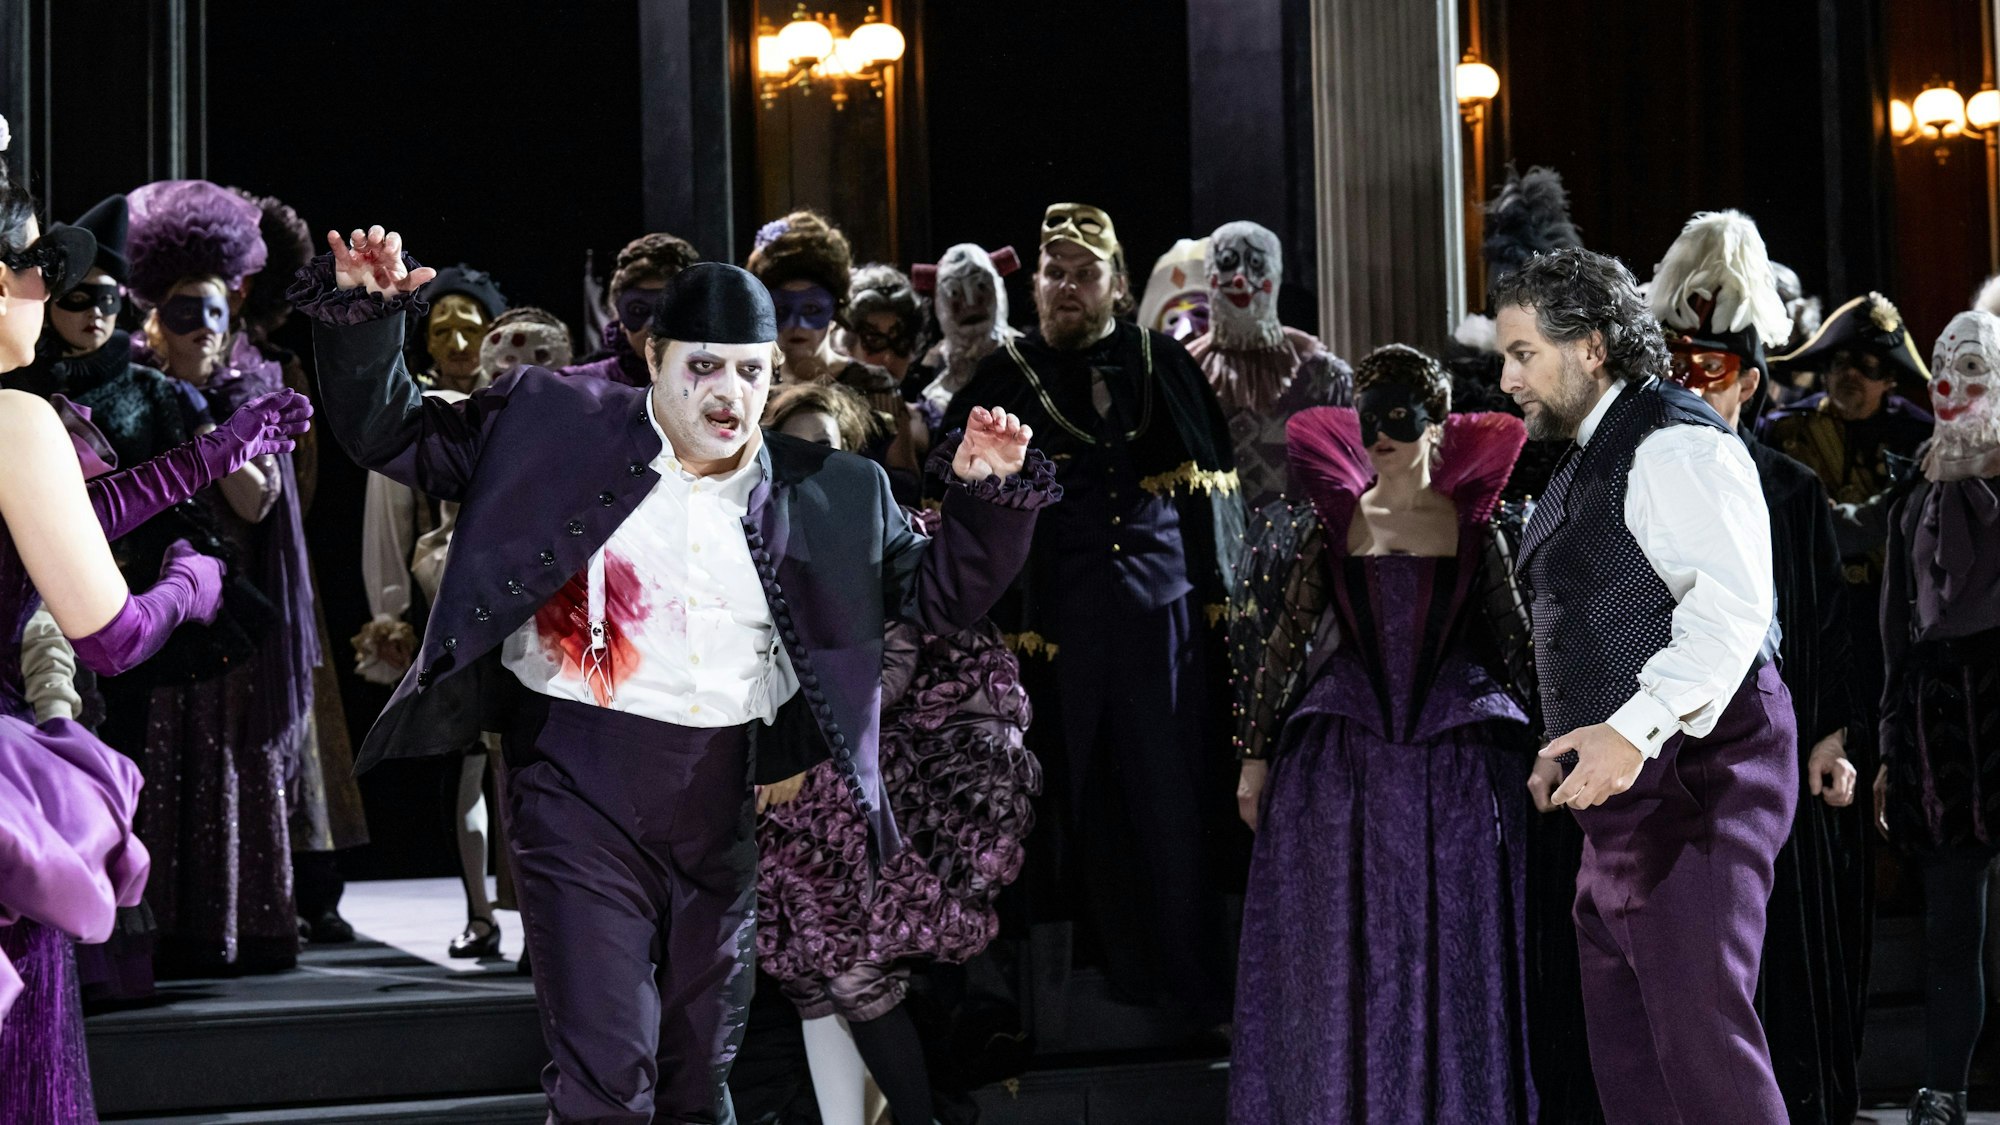 Riccardo wirkt mit weiß geschminktem Gesicht und violettem Anzug ein bisschen wie der Joker. Neben ihm Simone del Savio, ebenfalls in violetter Hose, aber weißem Hemd und einer Weste. Im Hintergrund das bunte Treiben des Chores der Kölner Oper.